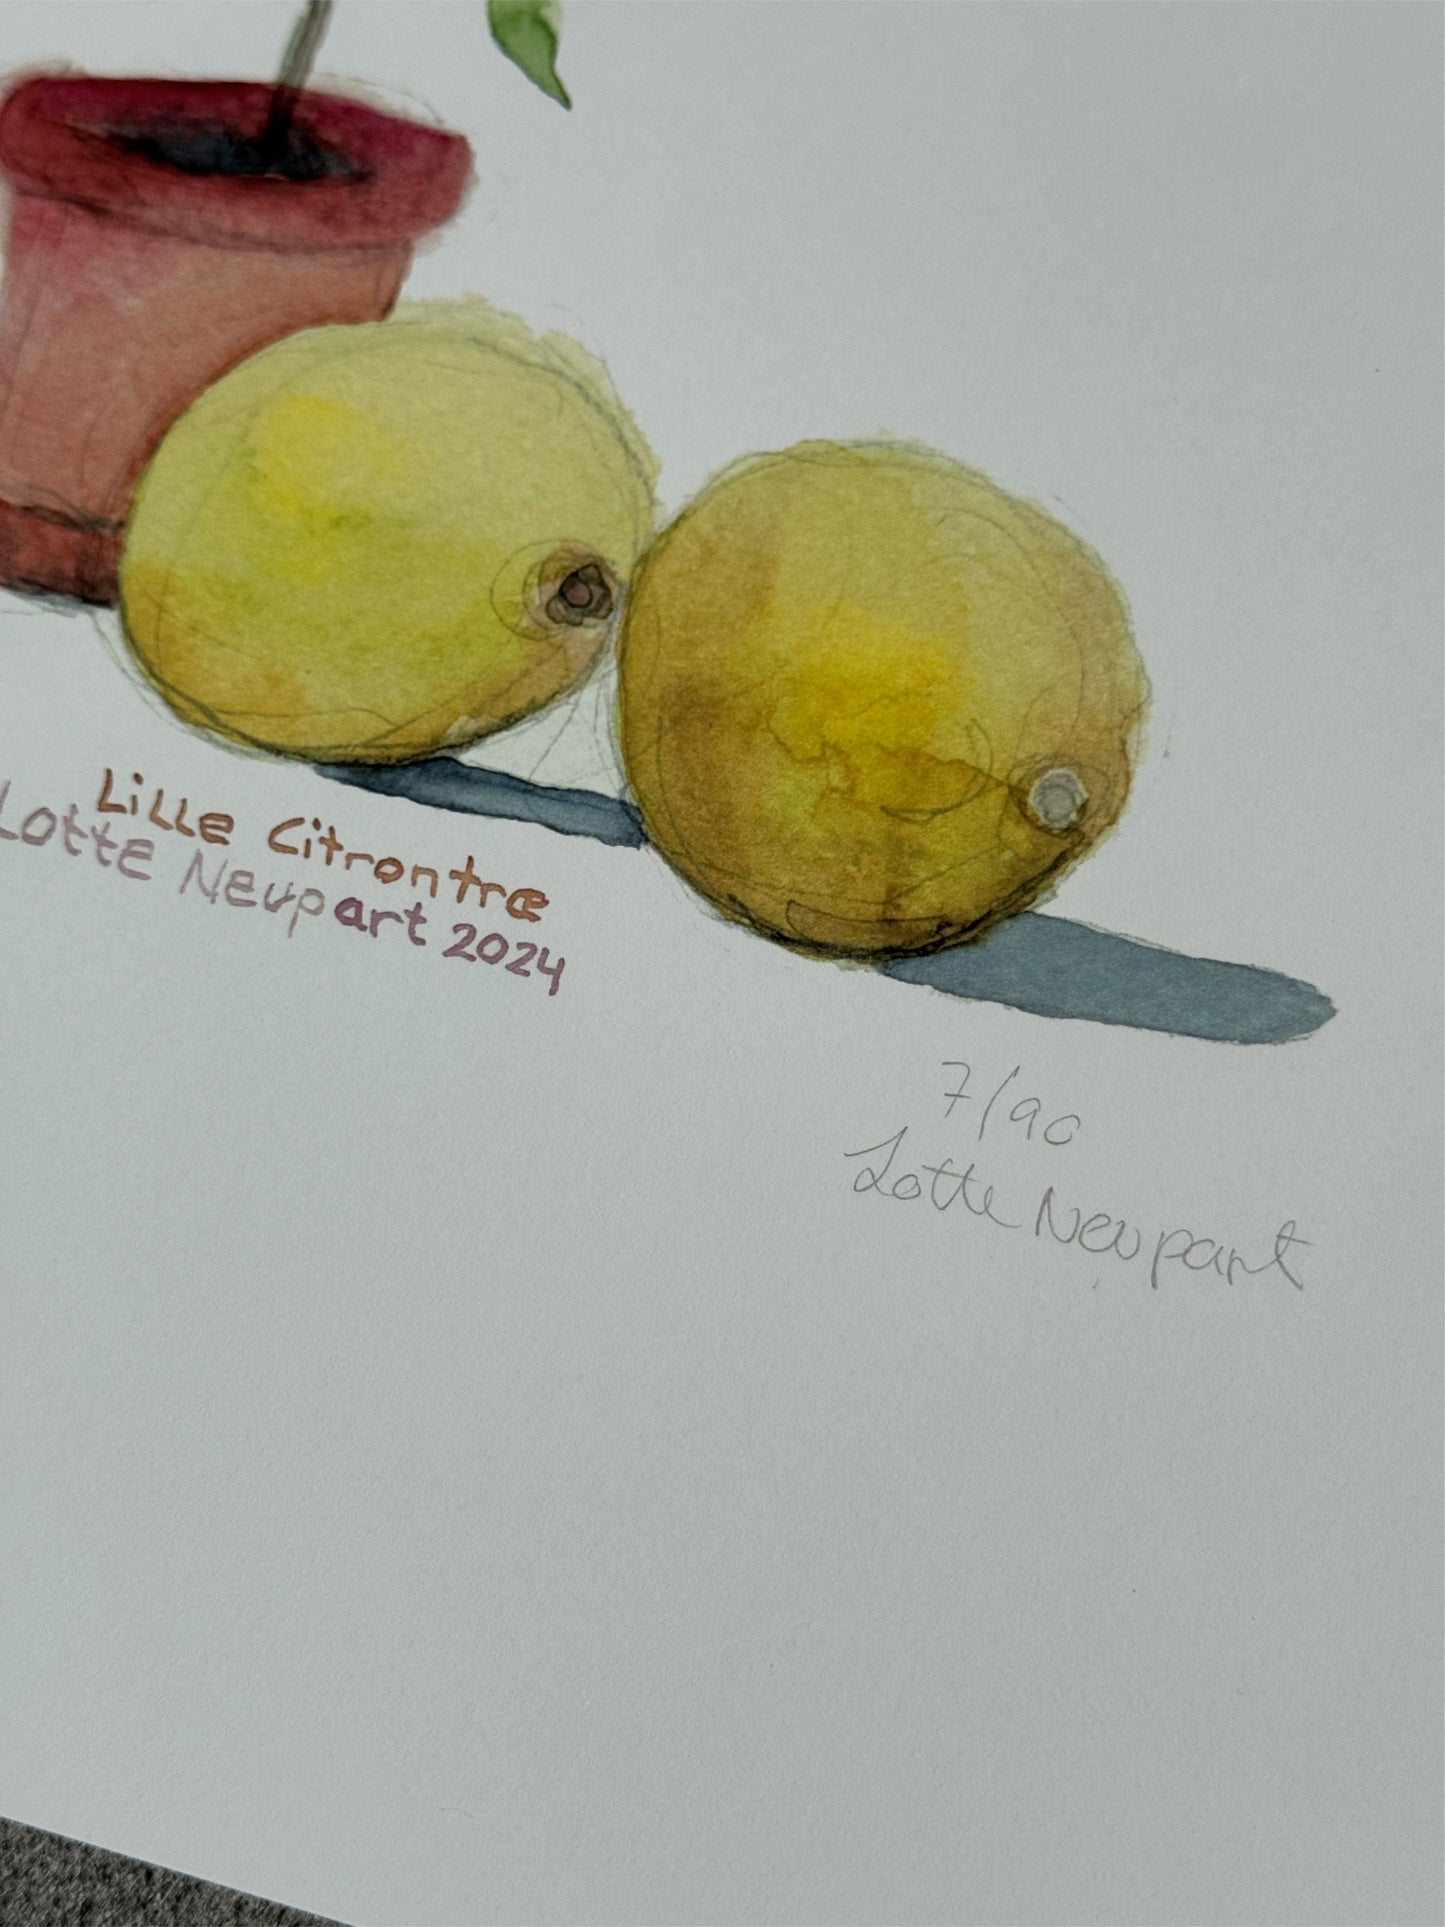 Lille Citrontræ - Lotte Neupart